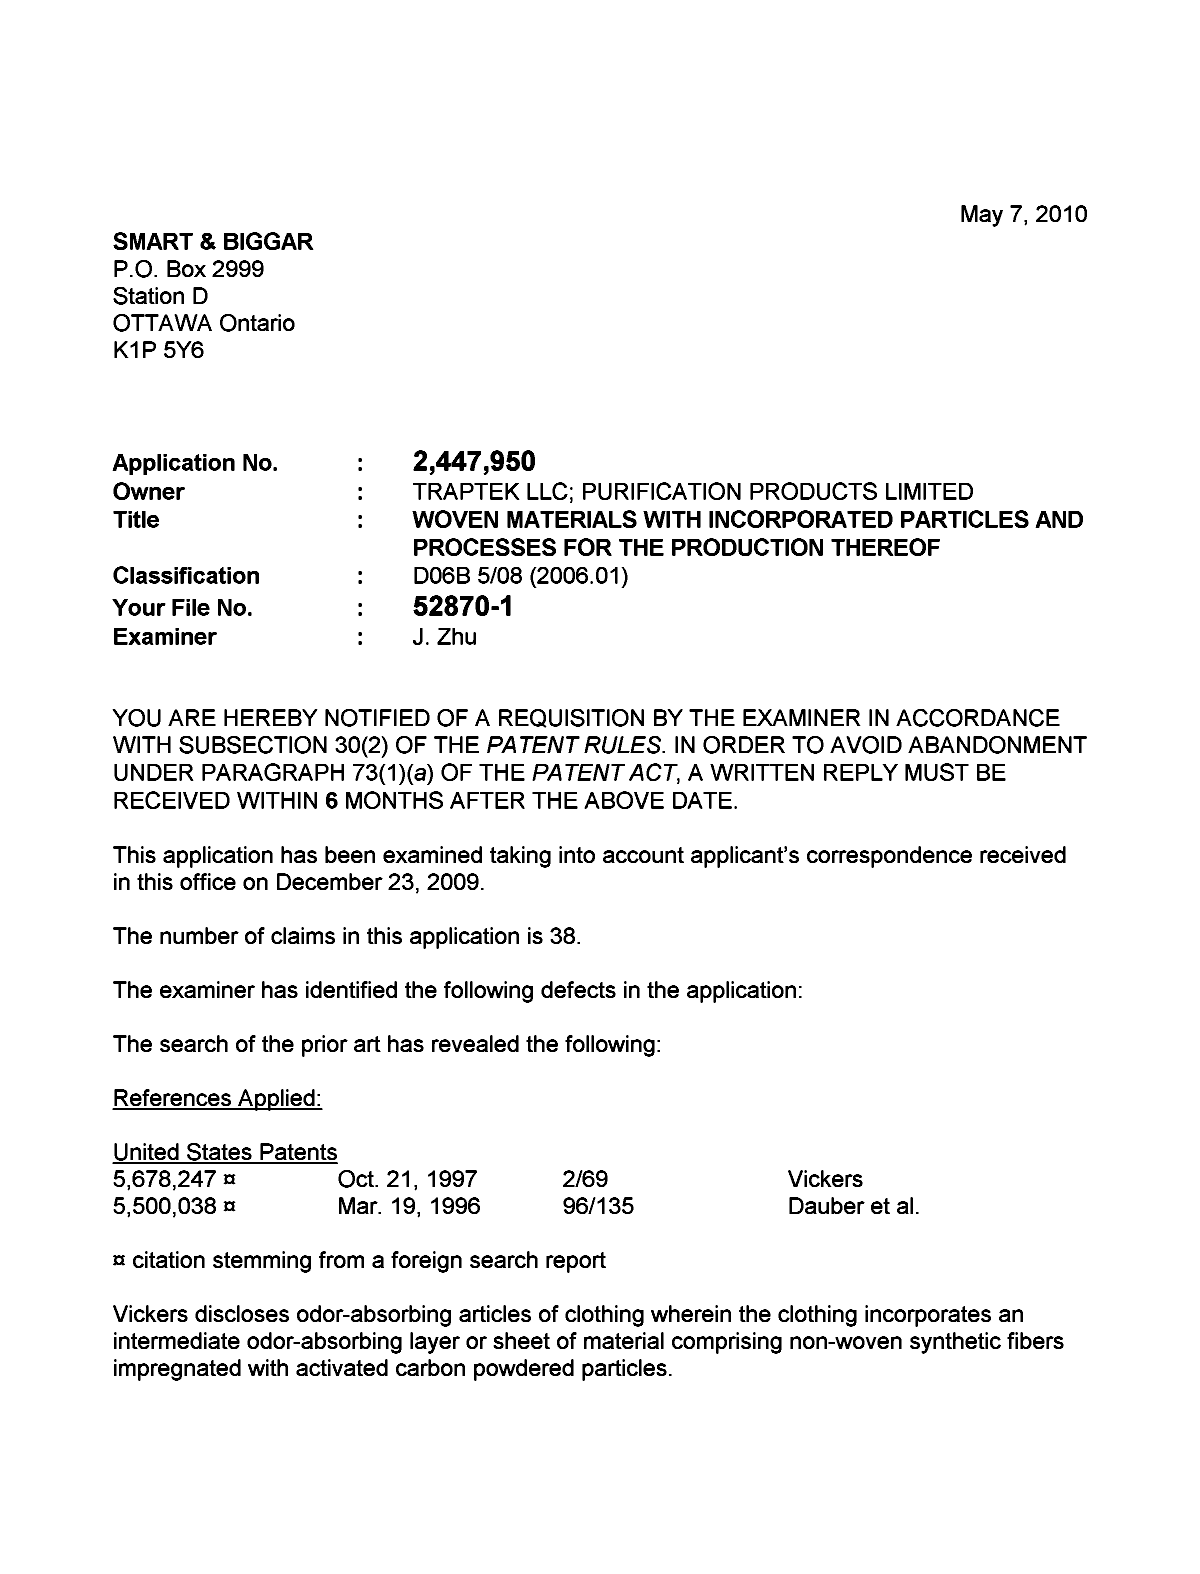 Document de brevet canadien 2447950. Poursuite-Amendment 20100507. Image 1 de 2